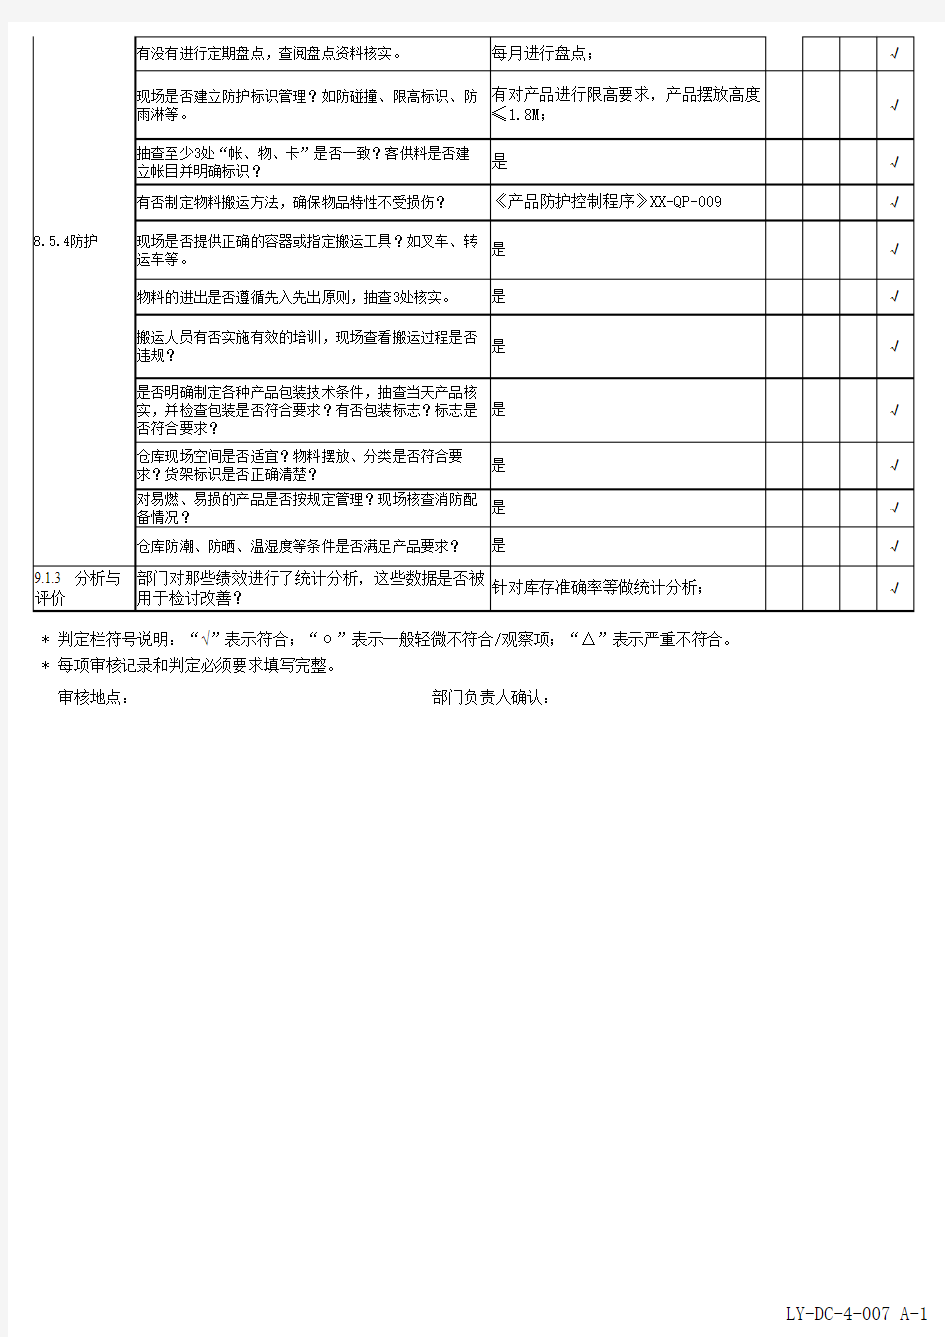 内部审核检查表-ISO19001-2015(仓库)